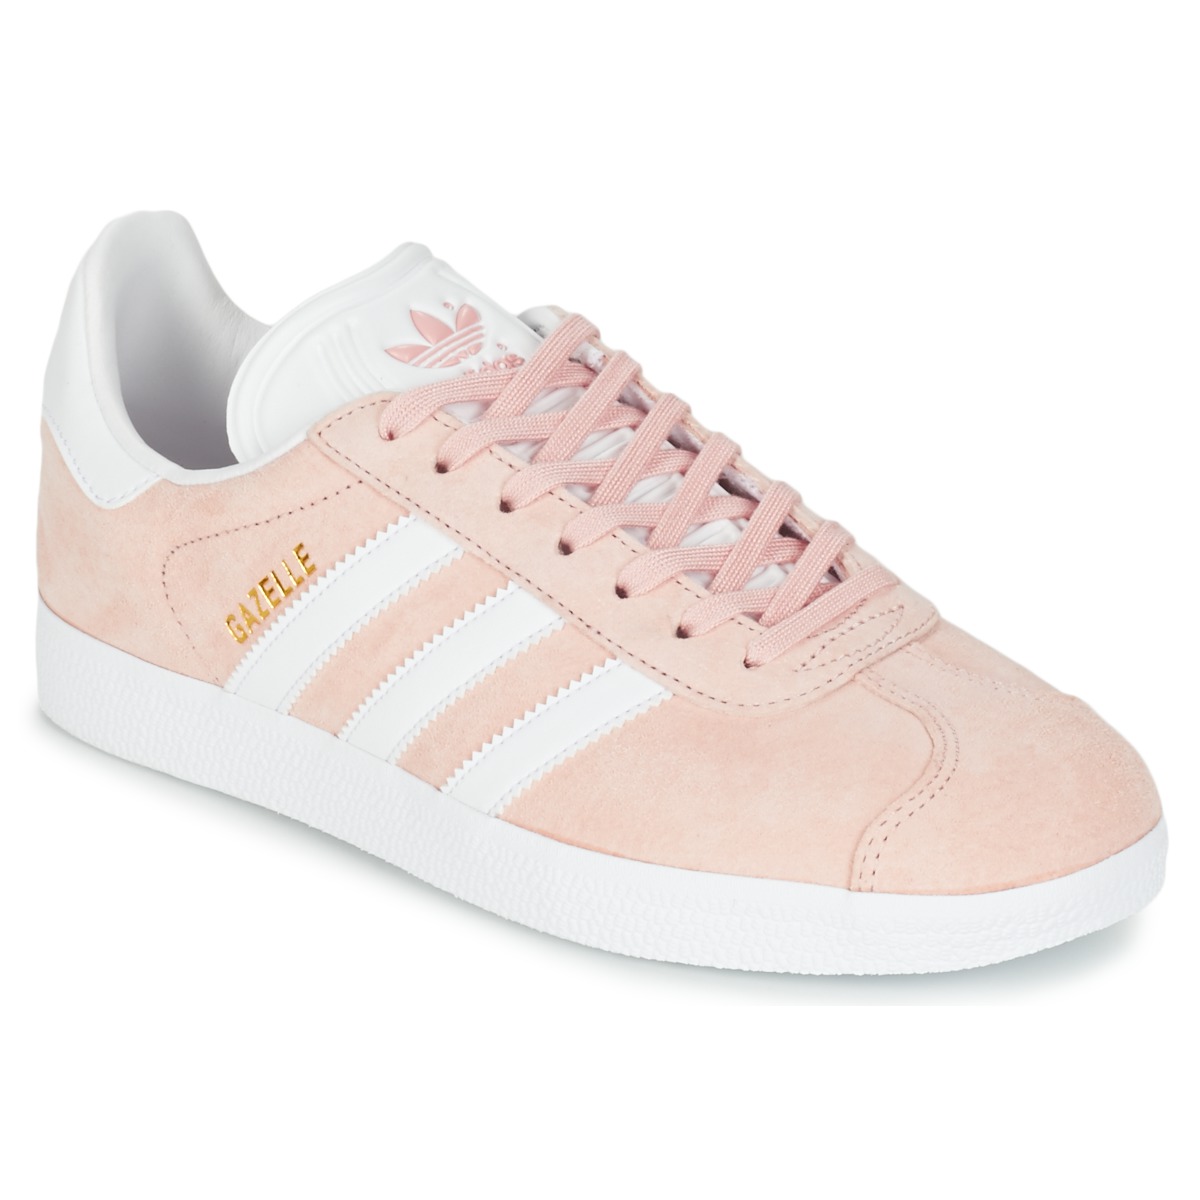 Sko Dame Lave sneakers adidas Originals GAZELLE Pink